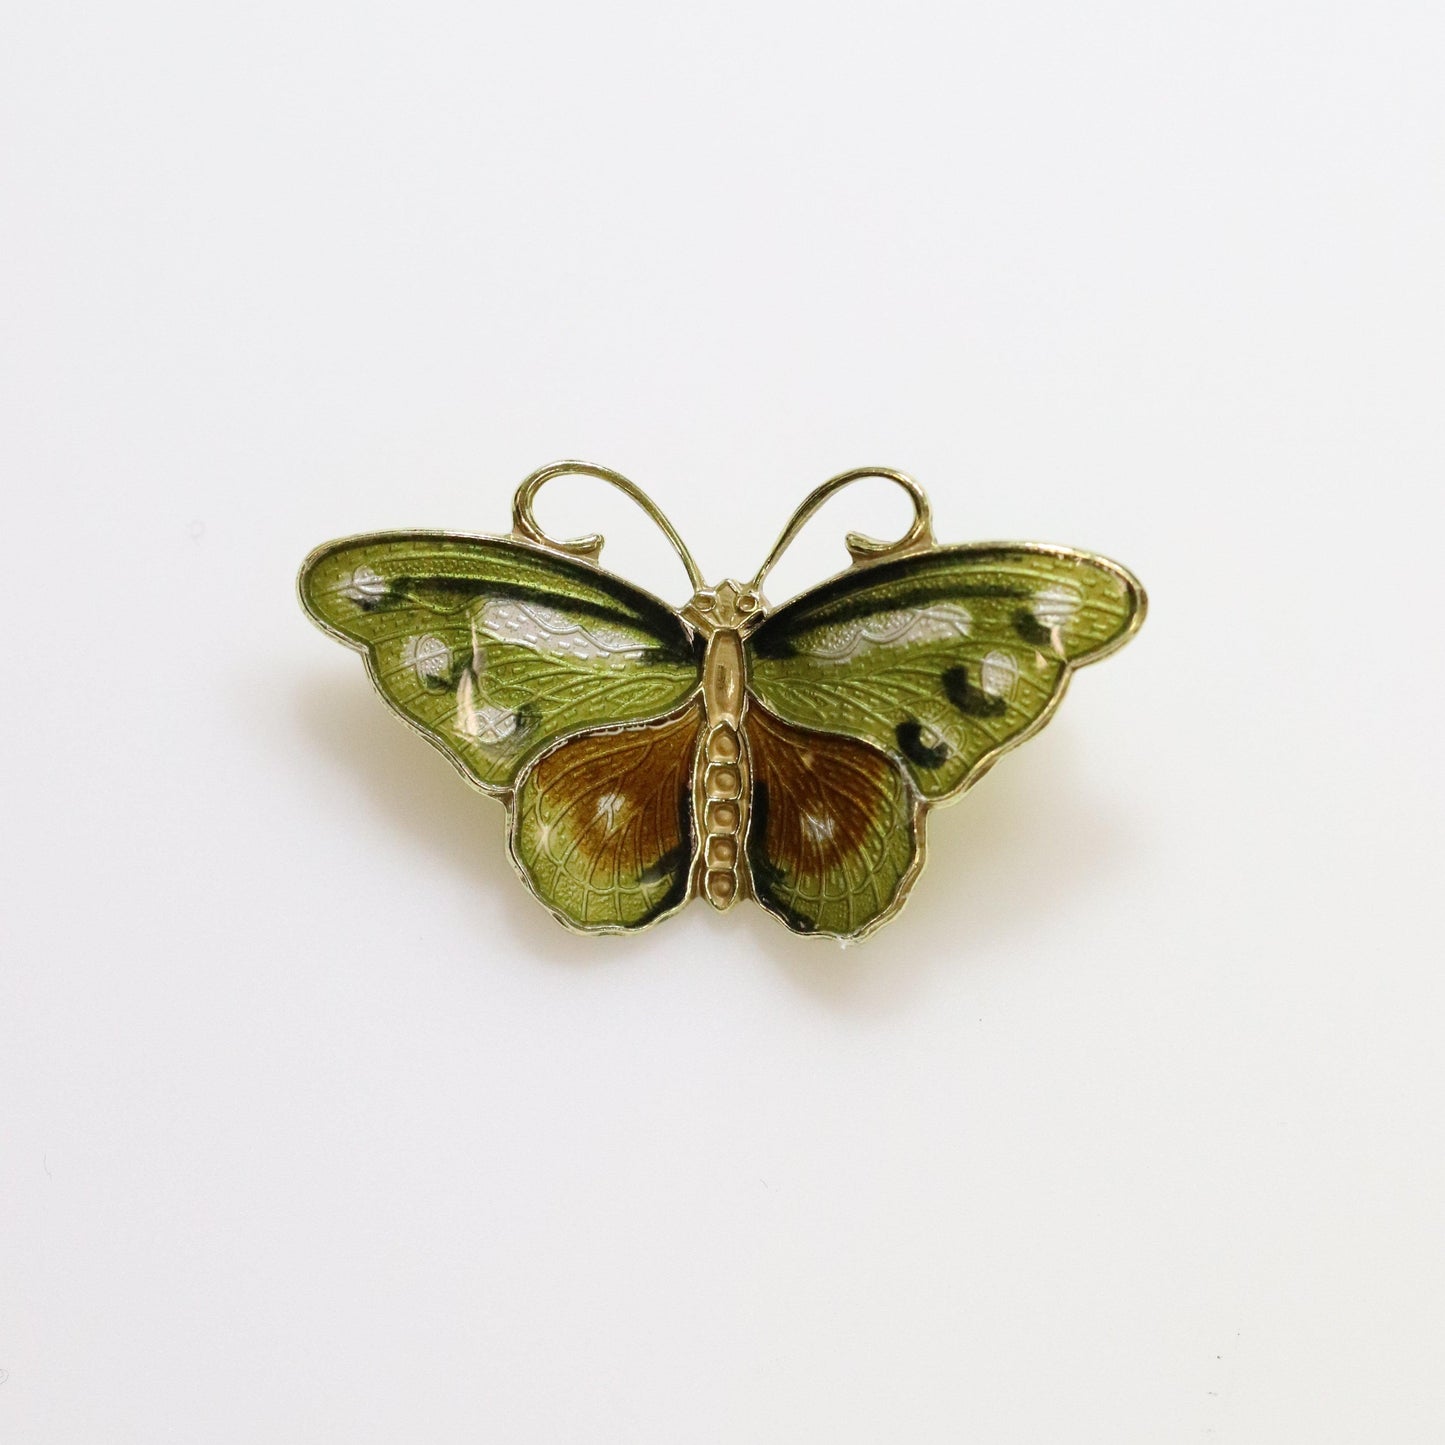 Vintage Hroar Prydz Enamel Jewelry | Petite Green Detailed Enamel Butterfly Brooch - Carmel Fine Silver Jewelry